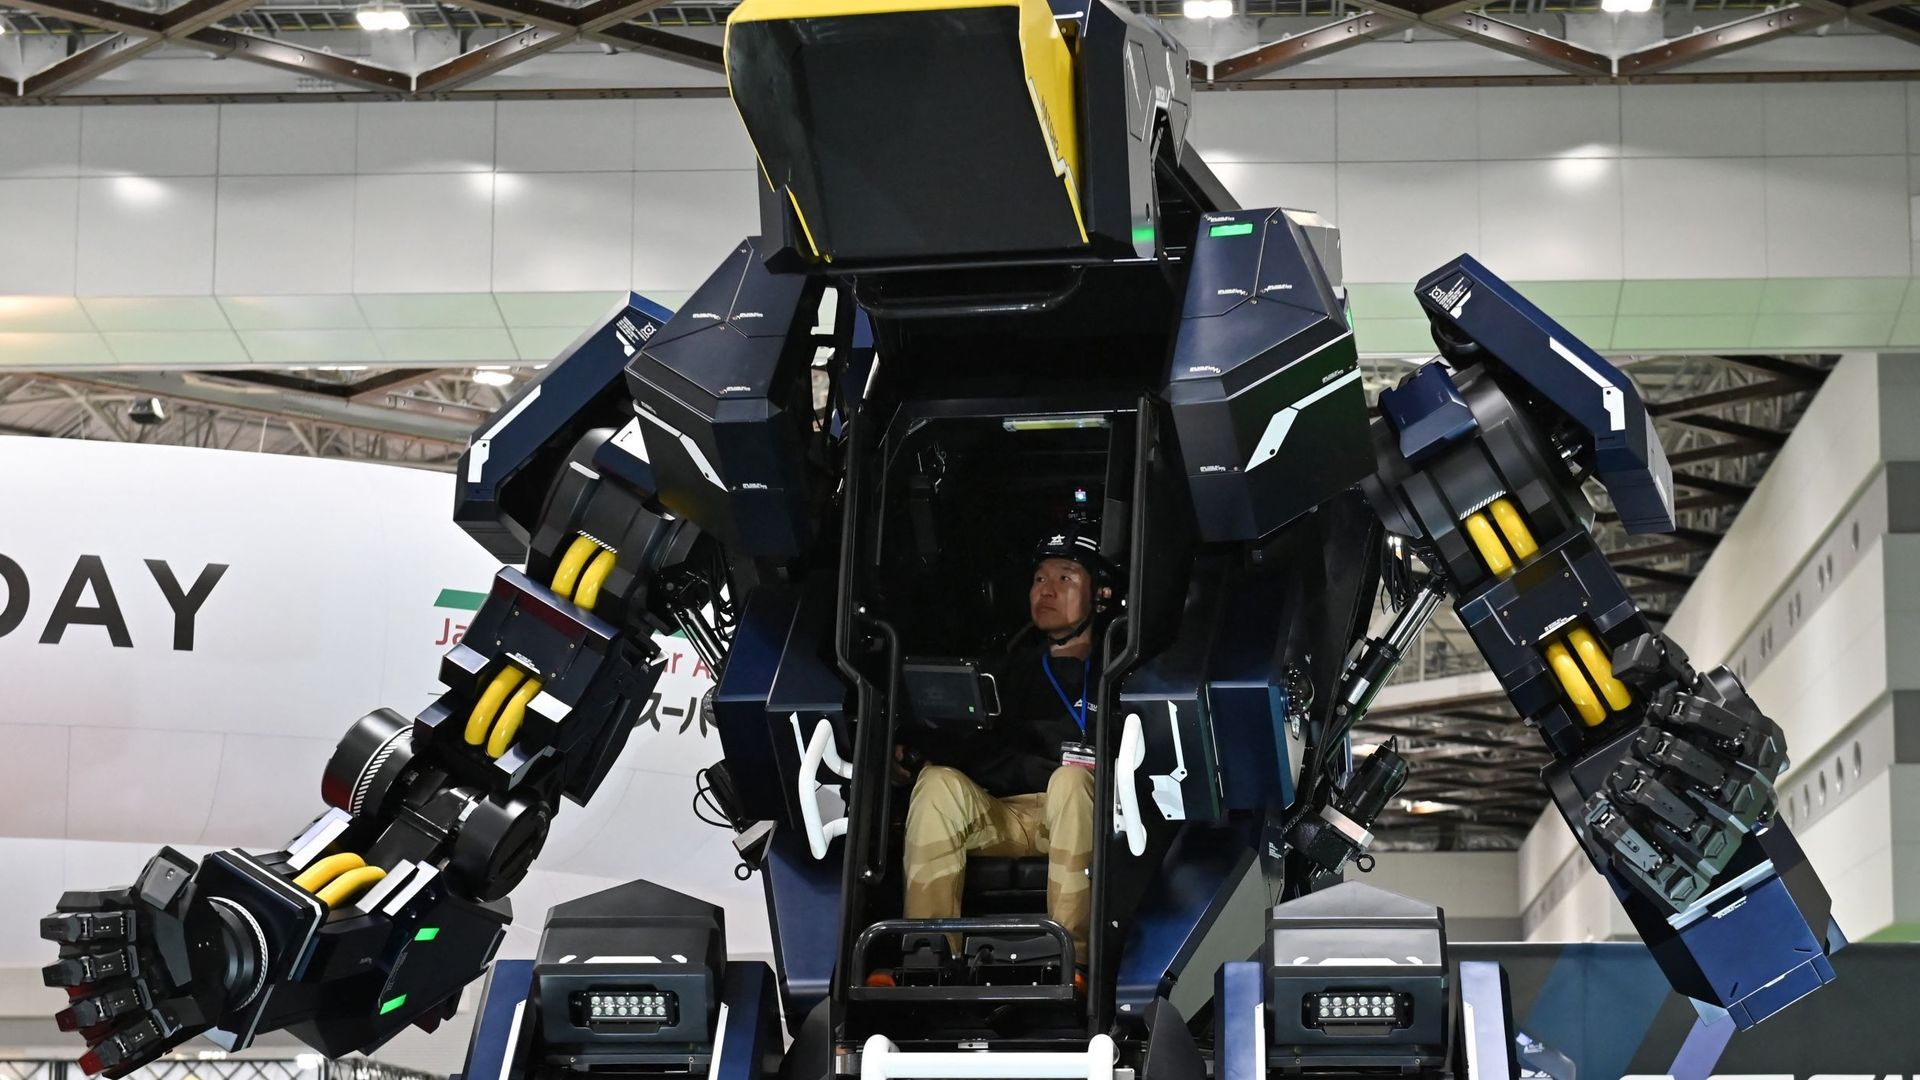 Le robot ARCHAX présenté au Japan Mobility Show